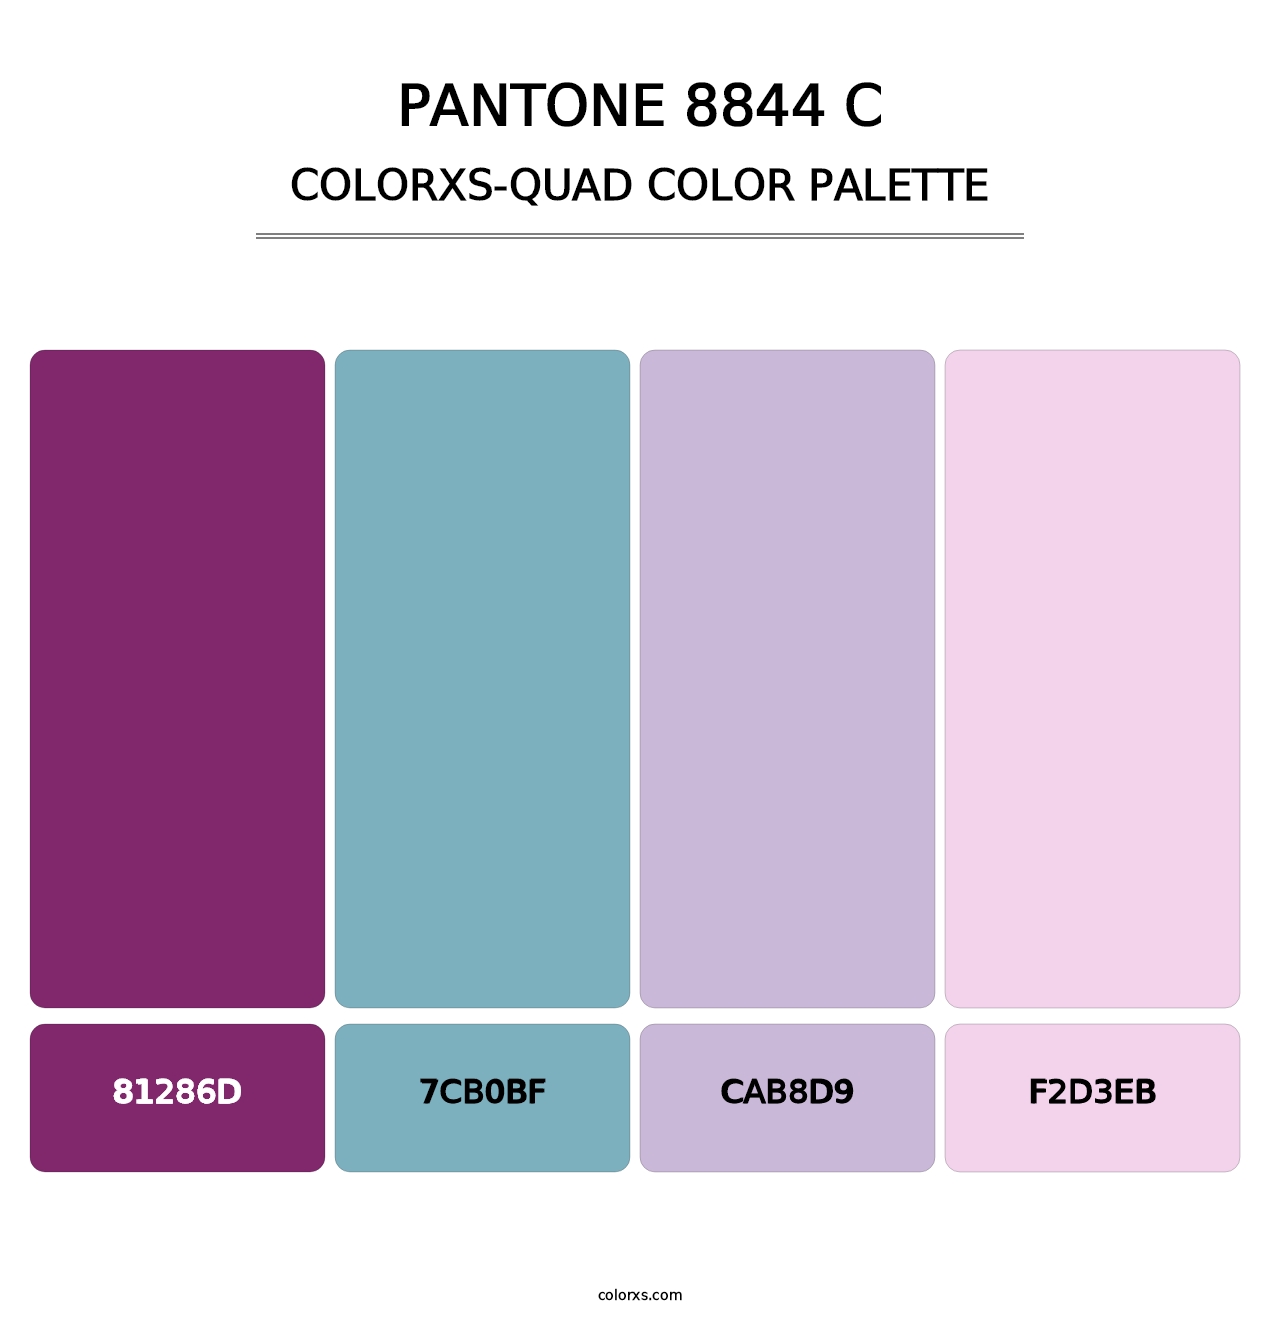 PANTONE 8844 C - Colorxs Quad Palette